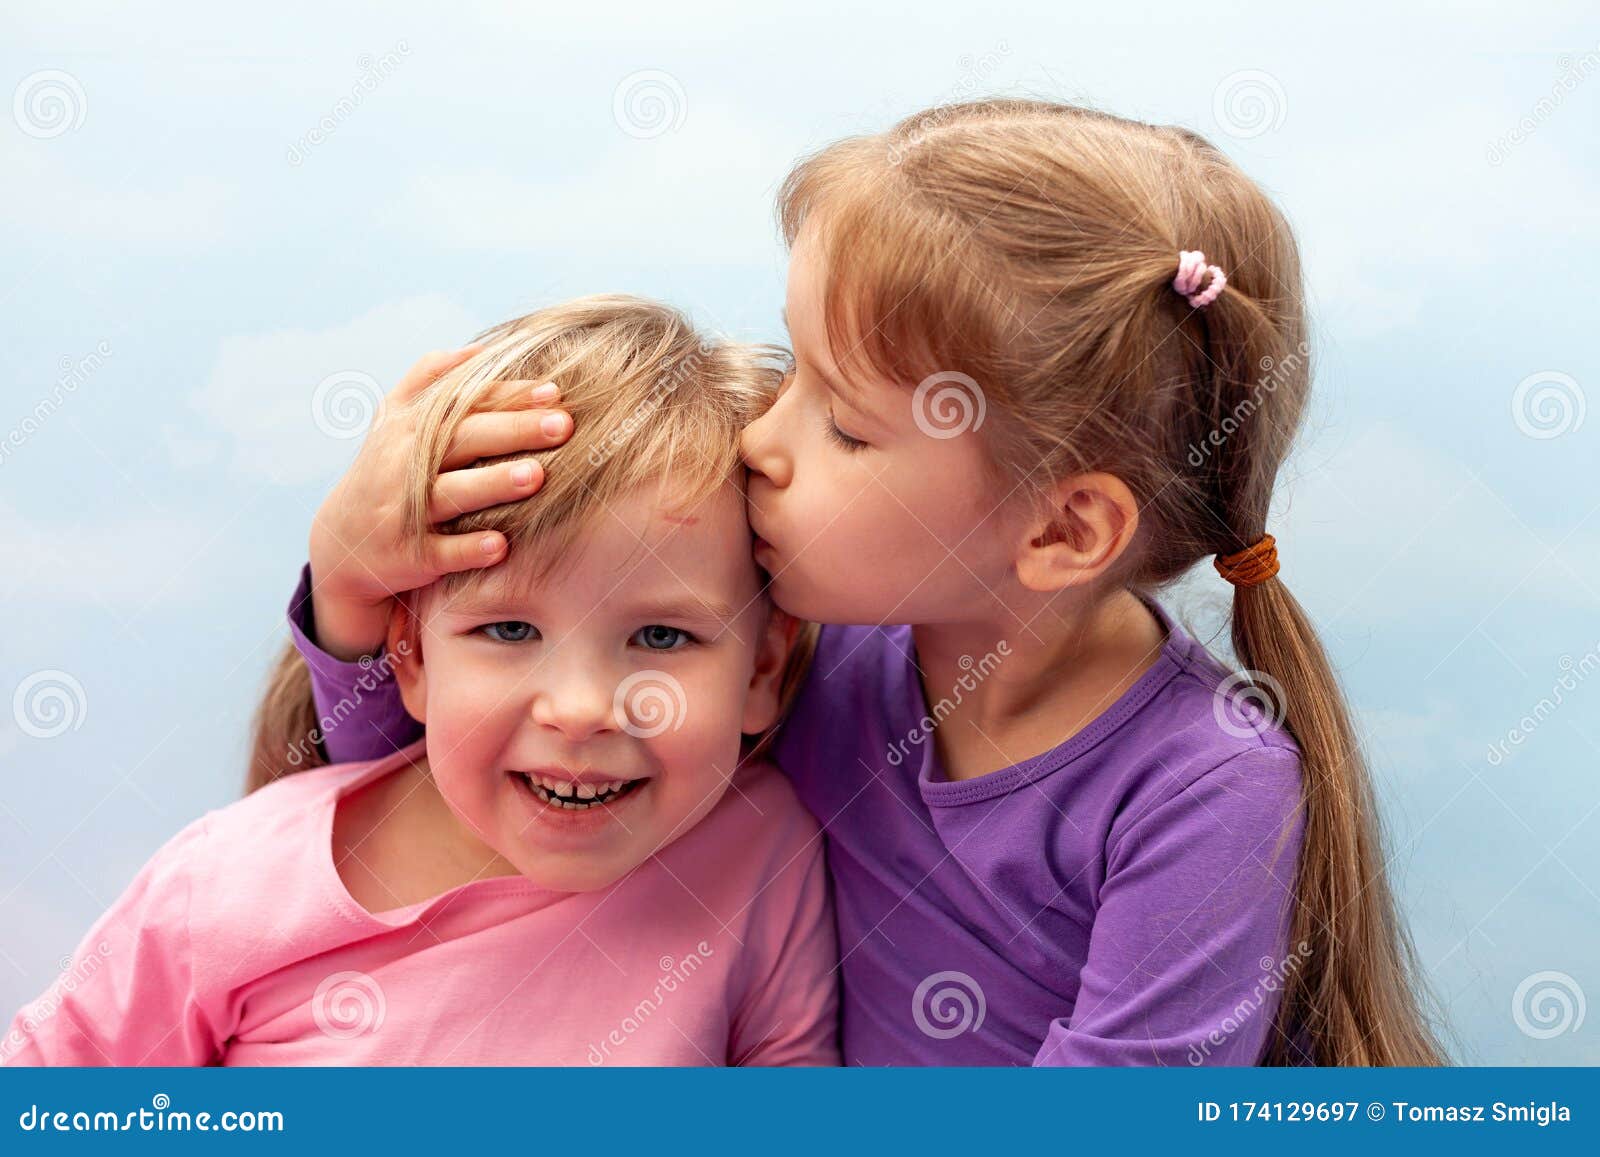 给她的弟弟亲吻外面 库存图片. 图片 包括有 外面, 孩子, 女孩, 幸福, 系列, 生活方式, 关心, 童年 - 84012969